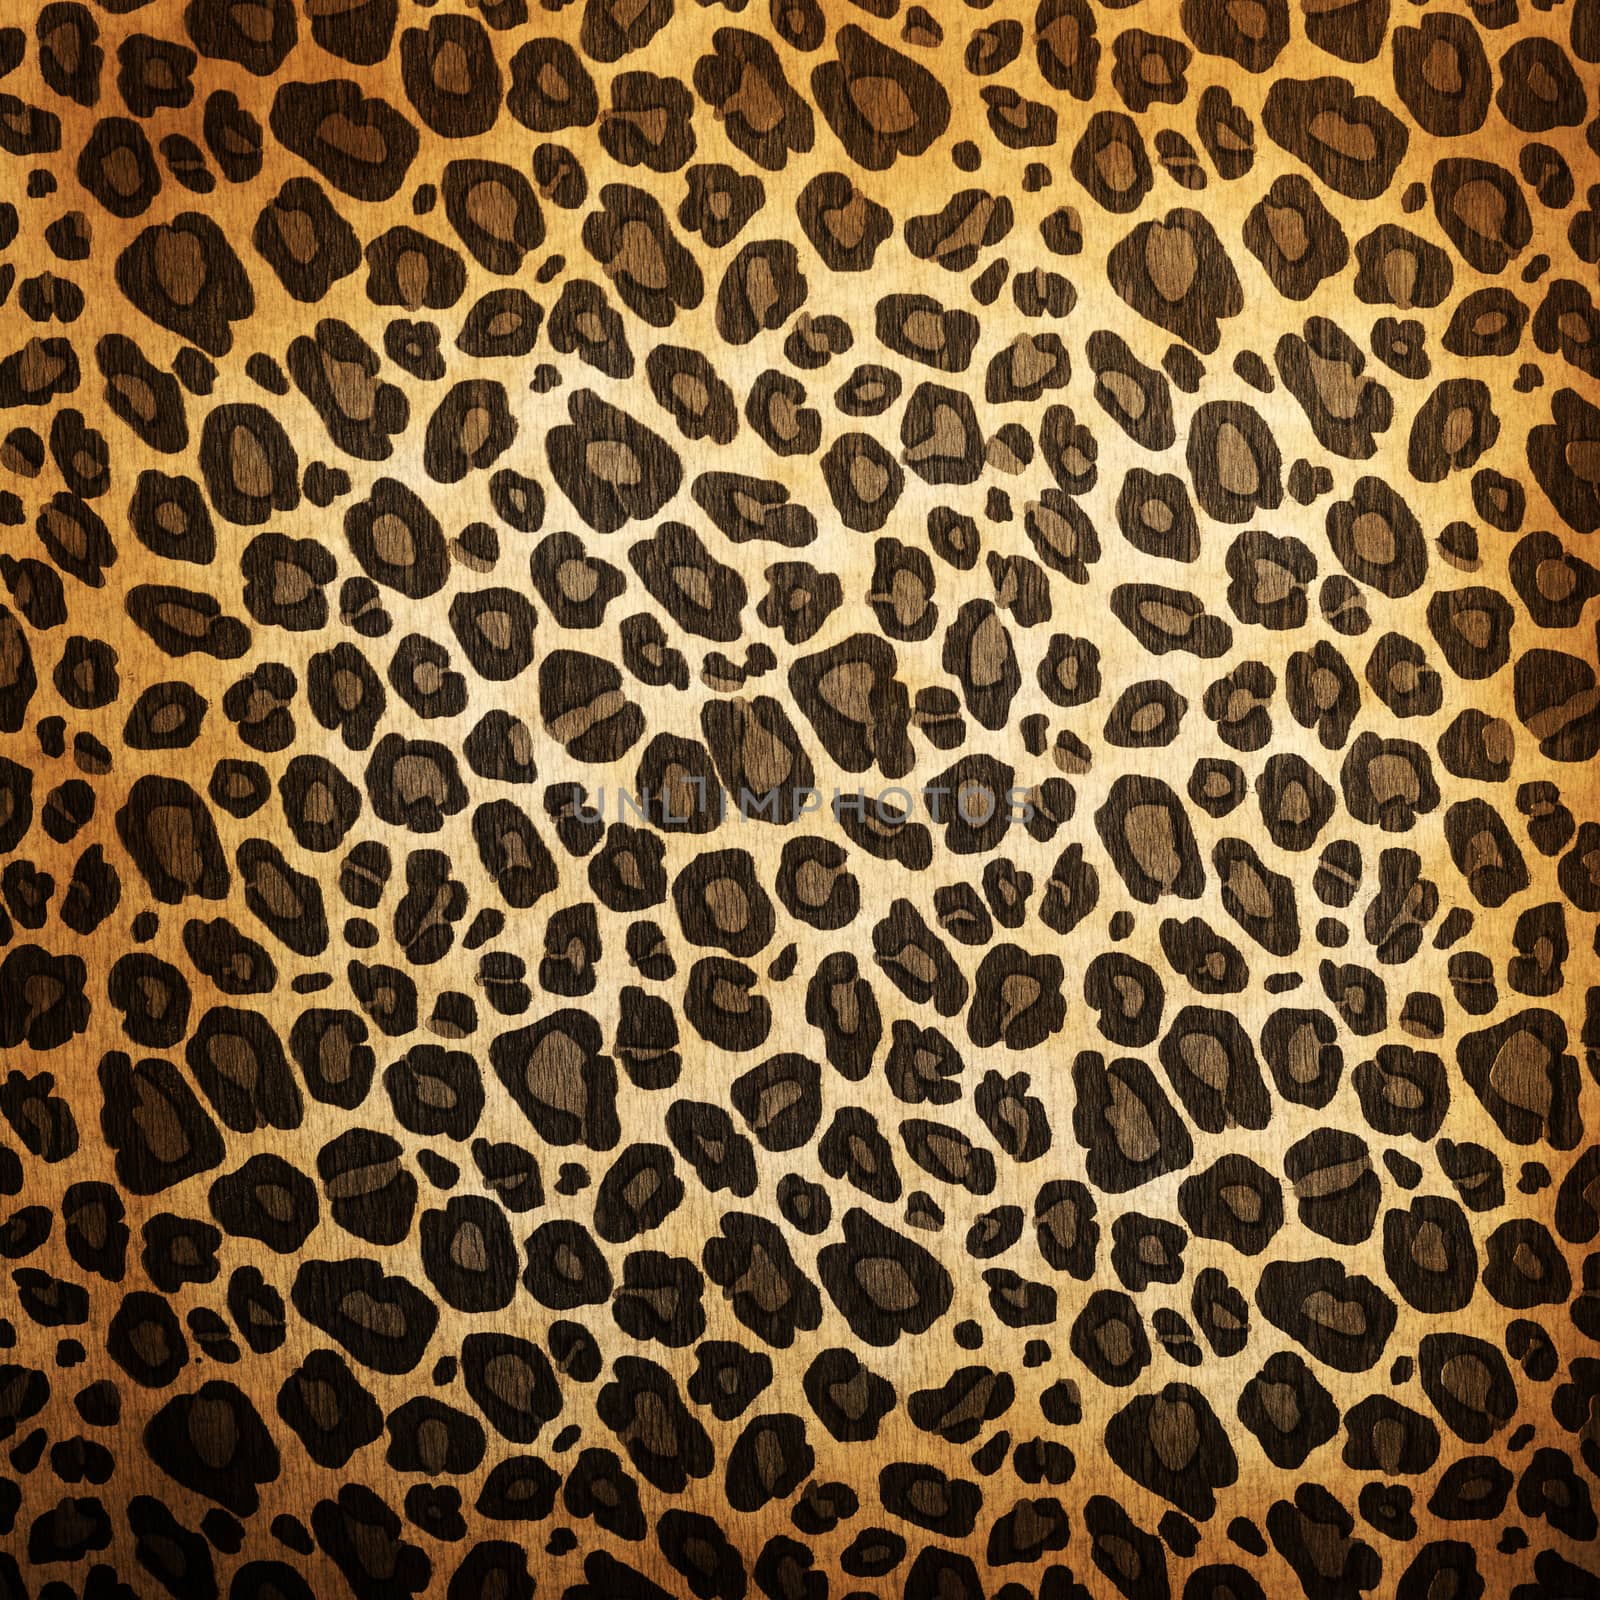 Leopard pattern by kwasny221